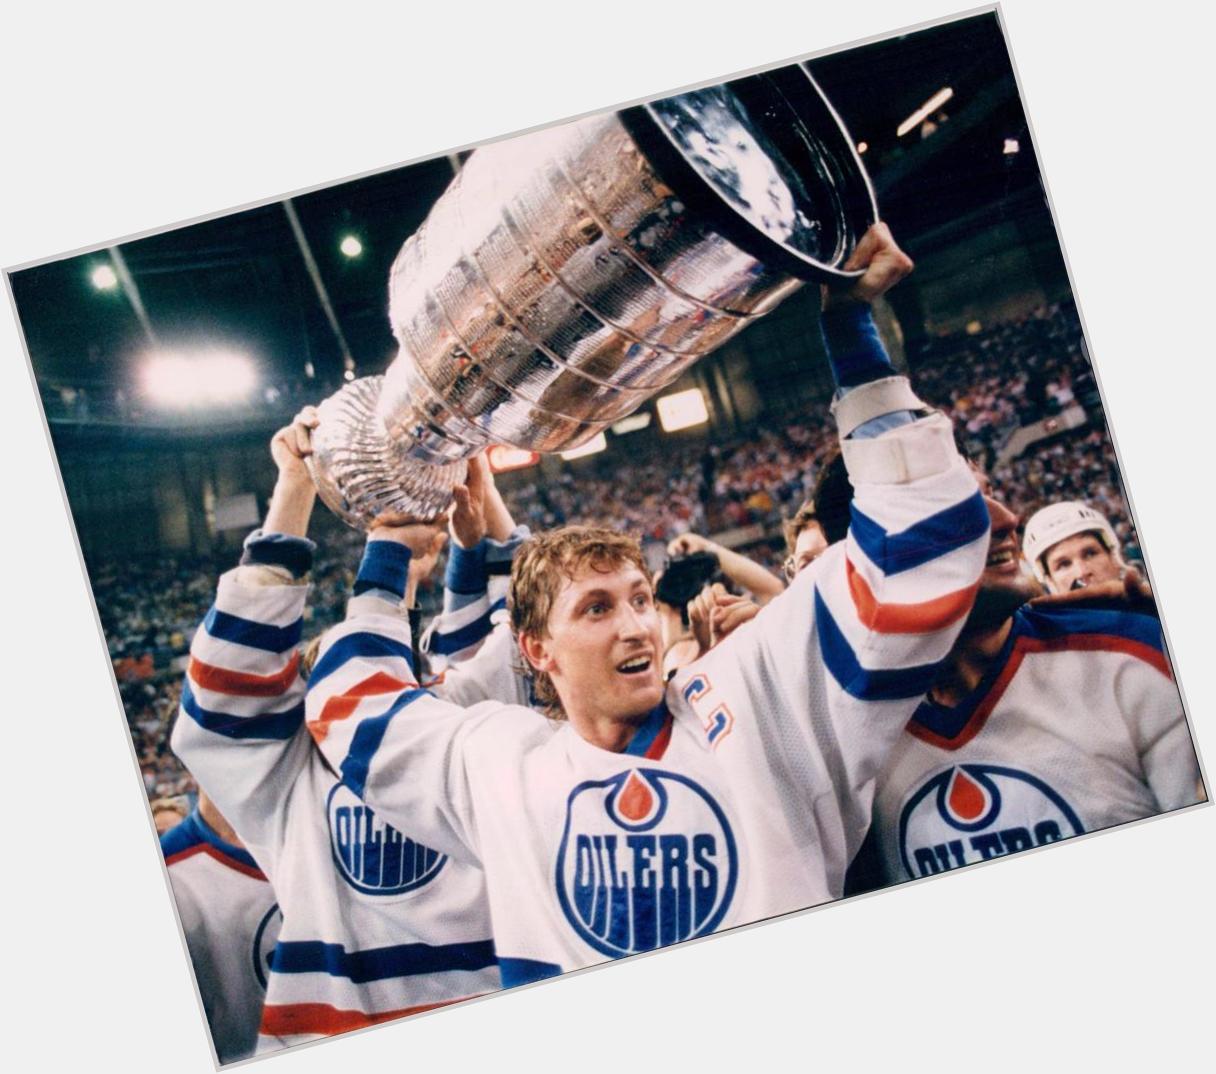 Happy birthday to the Great One Wayne Gretzky!!!   